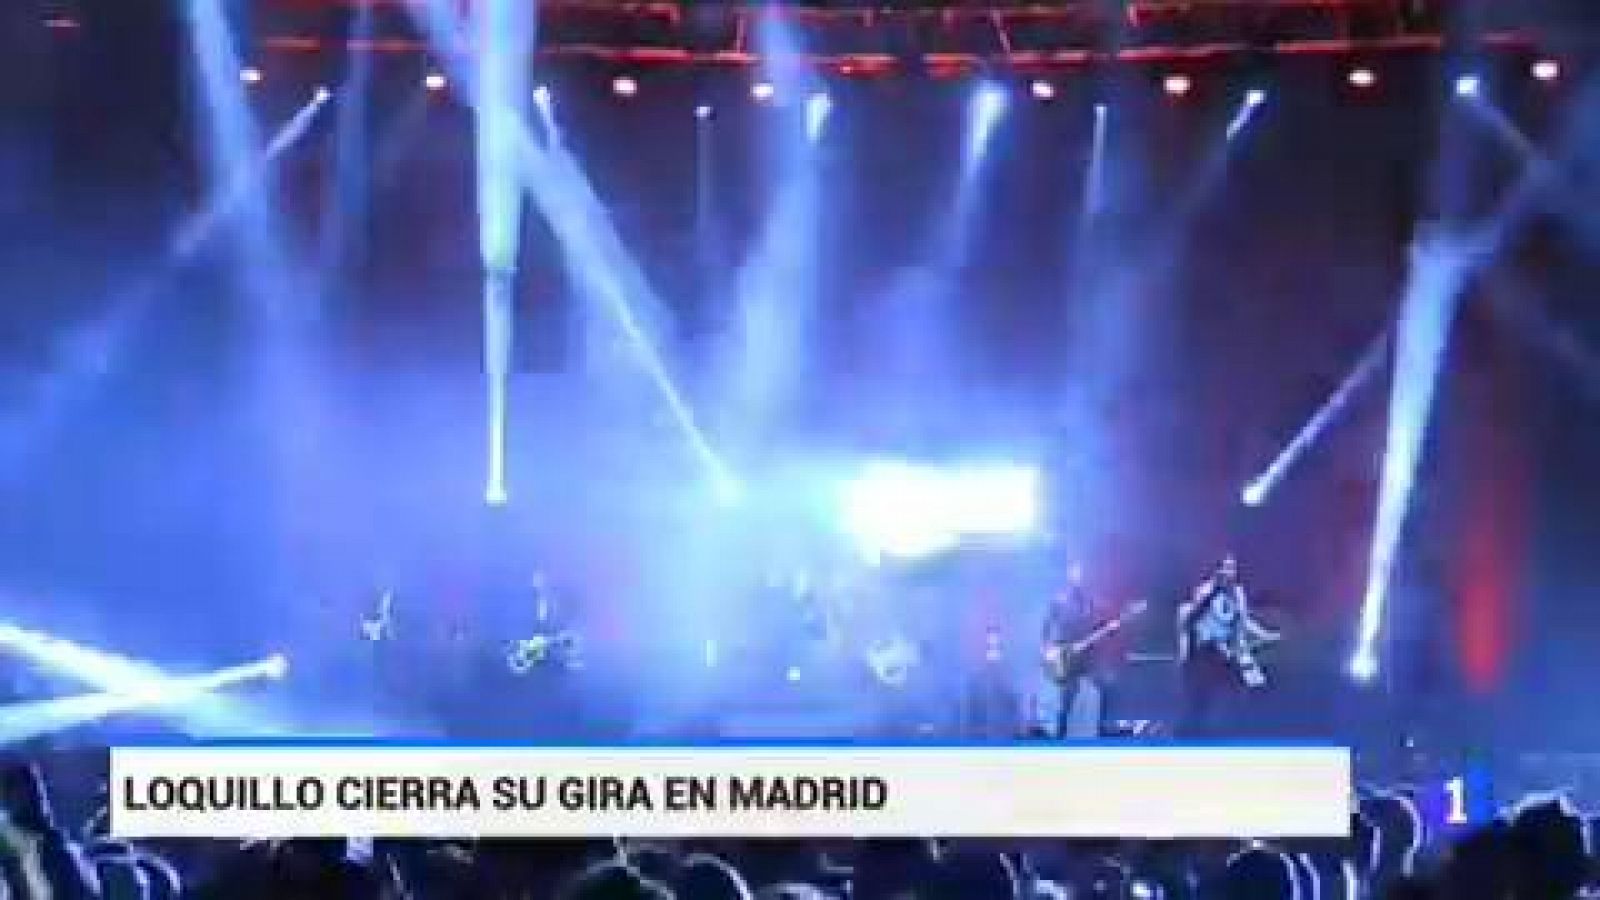 Loquillo cerró anoche en Madrid su gira Salud y rock & roll